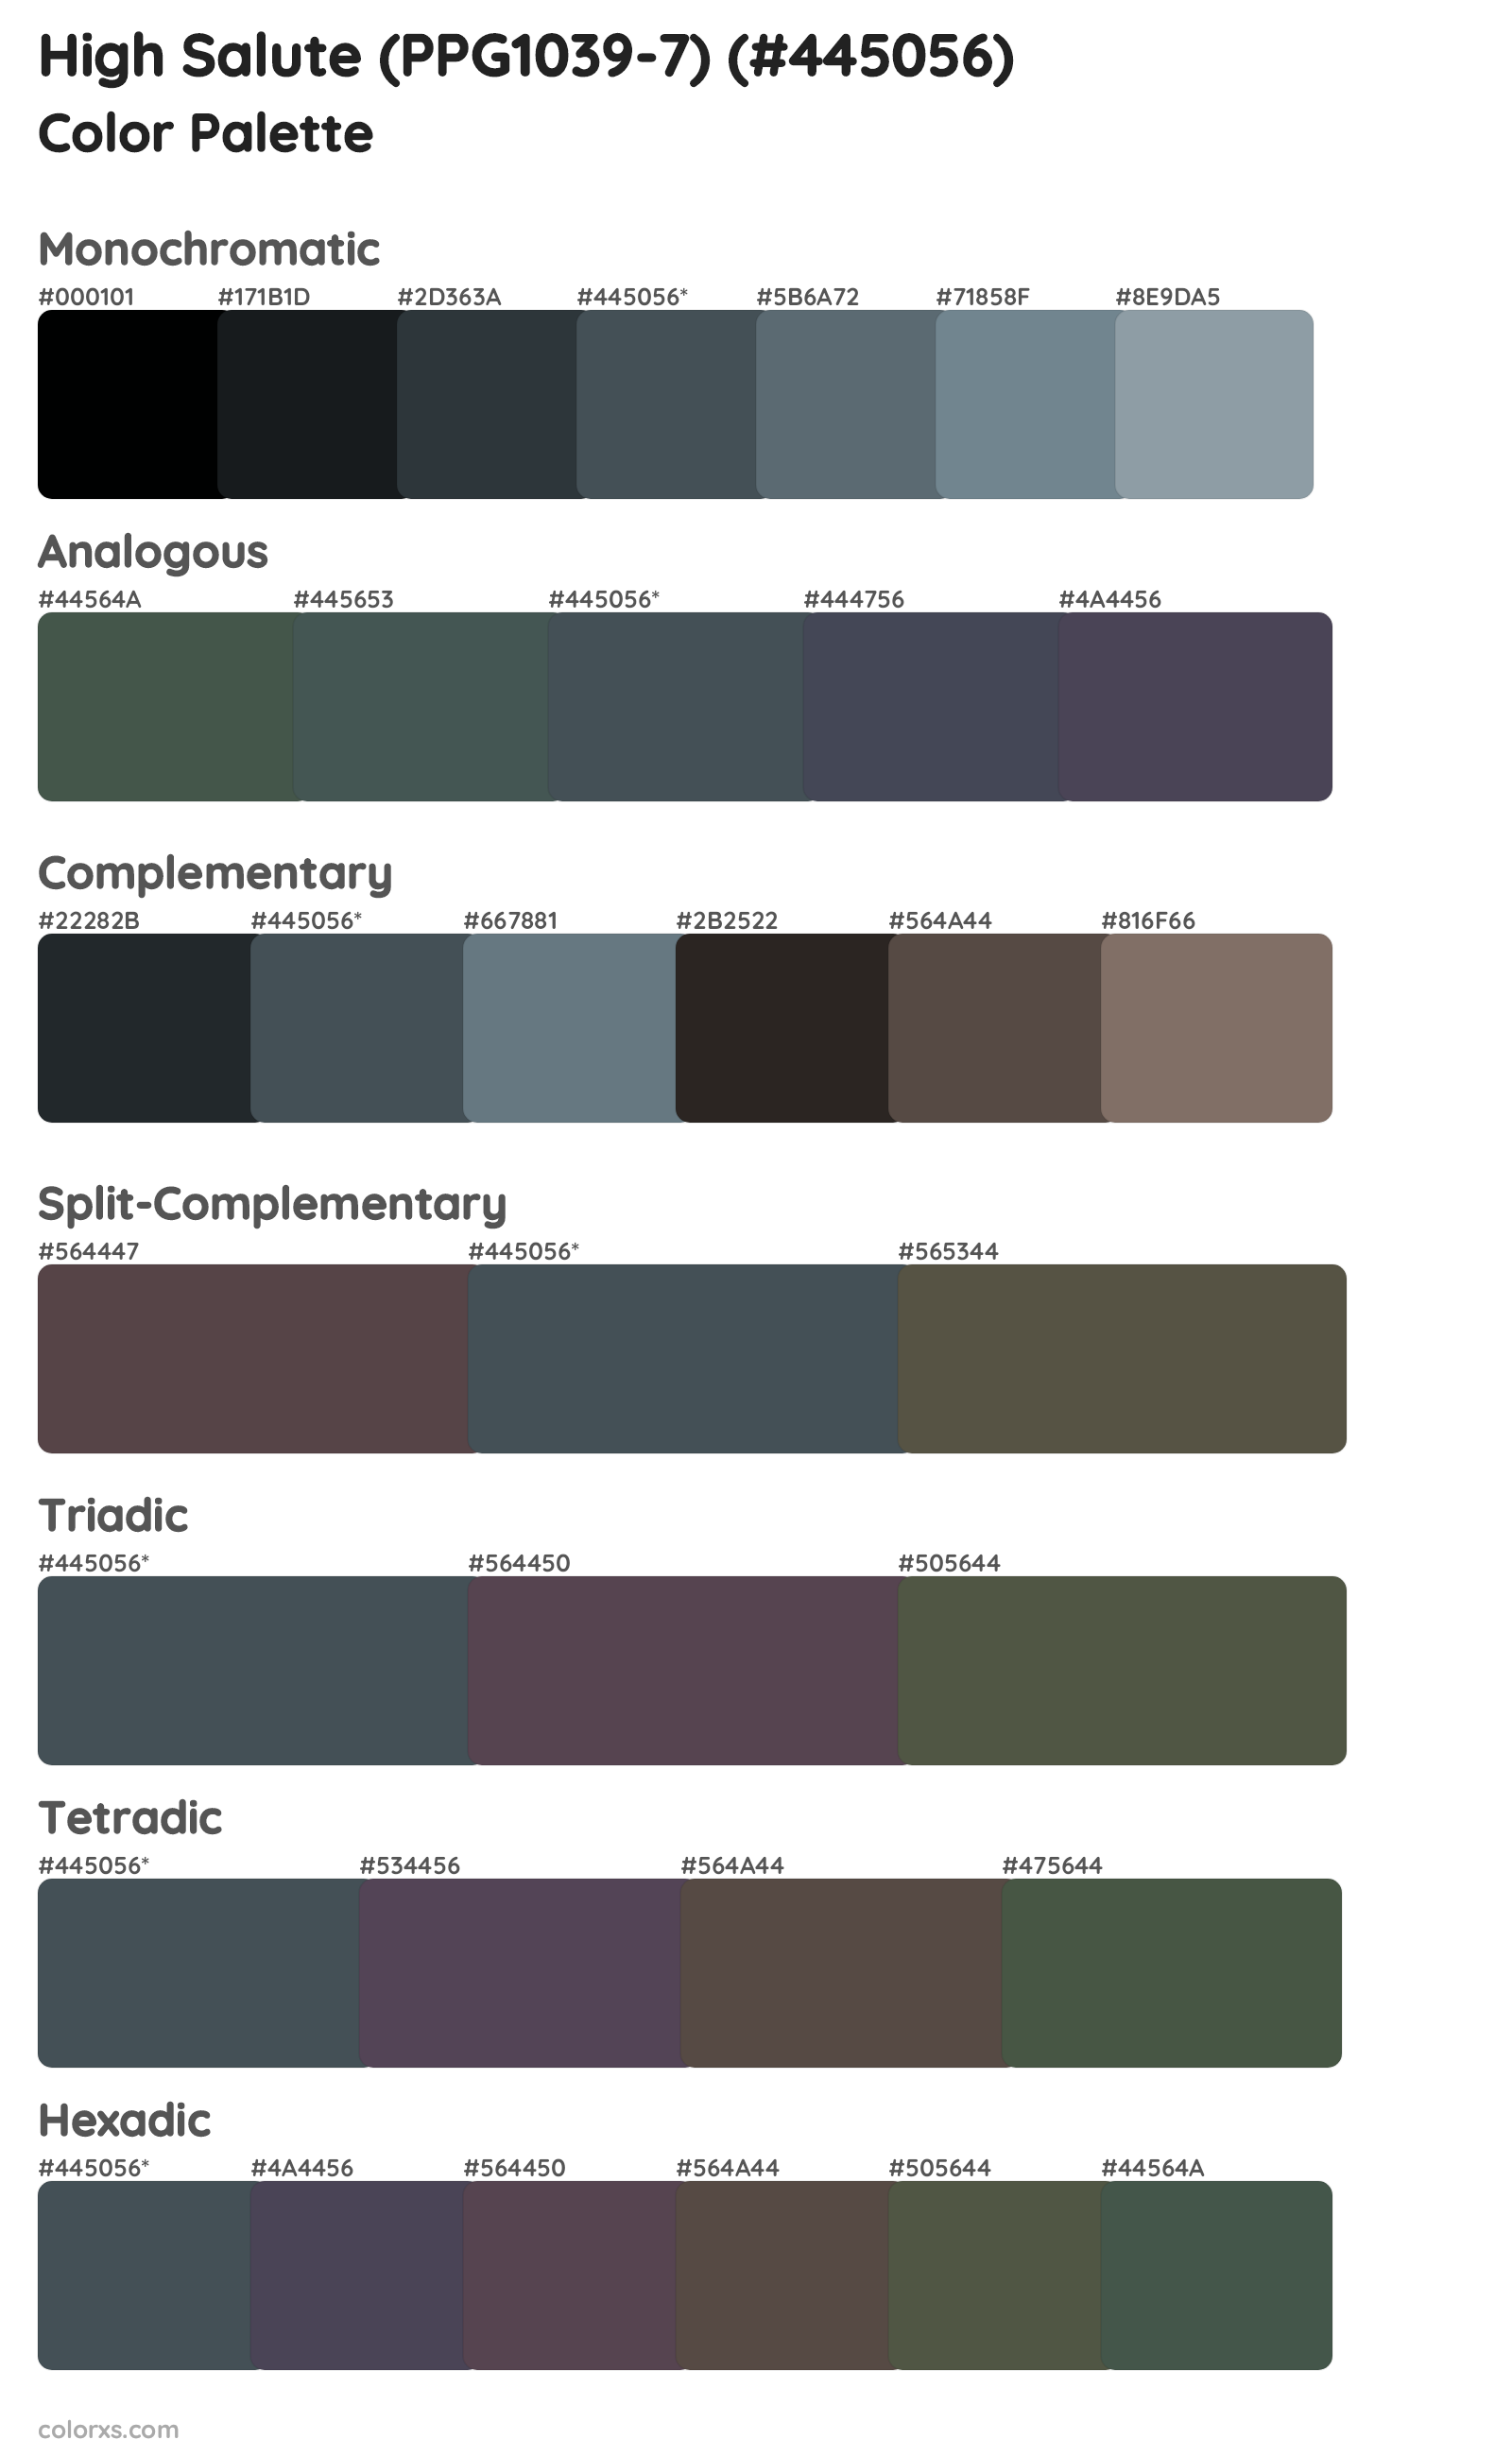 High Salute (PPG1039-7) Color Scheme Palettes